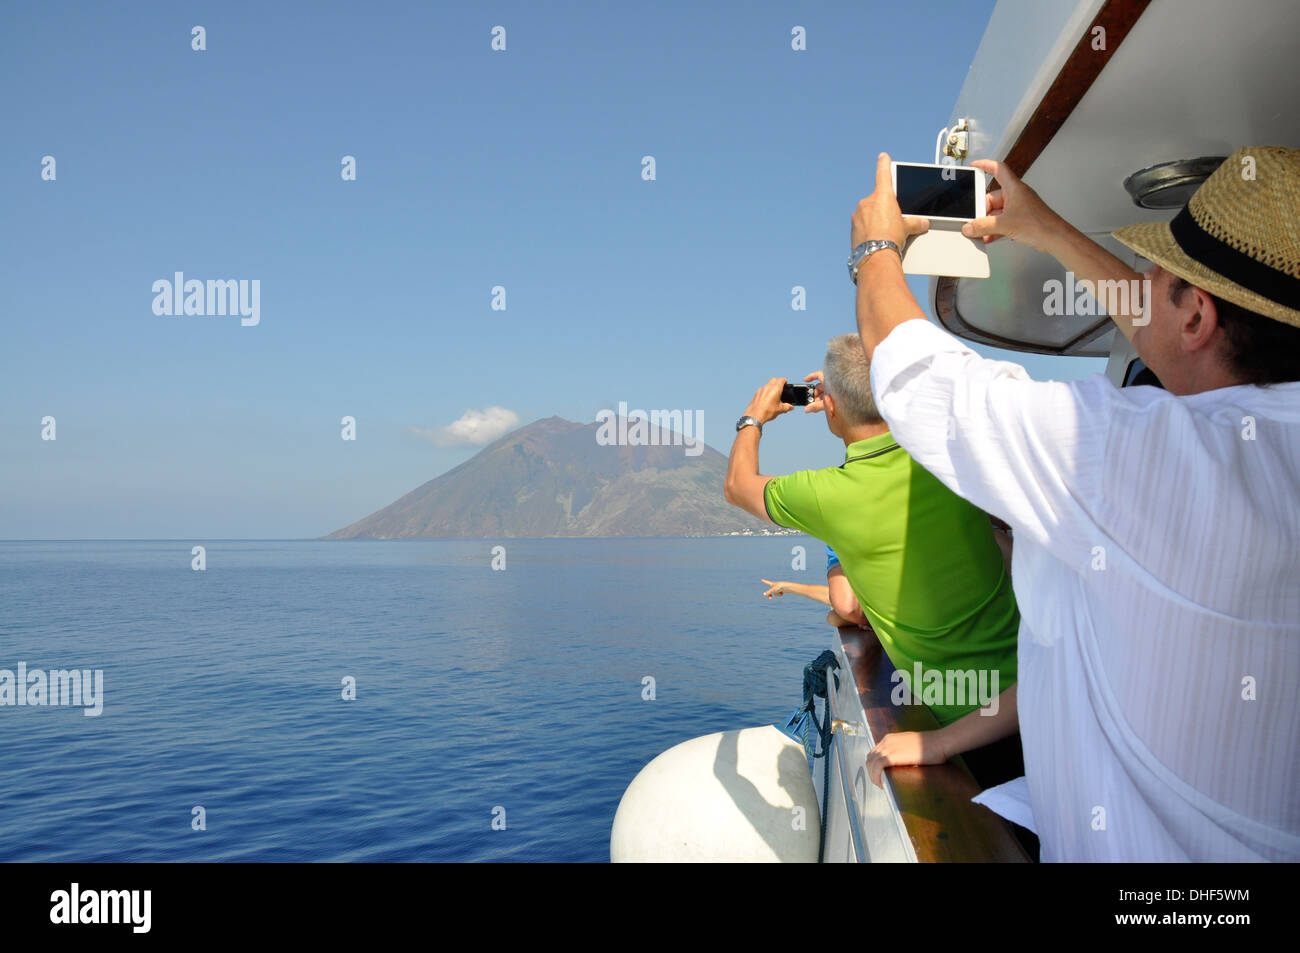 Les touristes de prendre des photos de Stromboli, volcan actif à proximité de la Calabre, Italie Banque D'Images